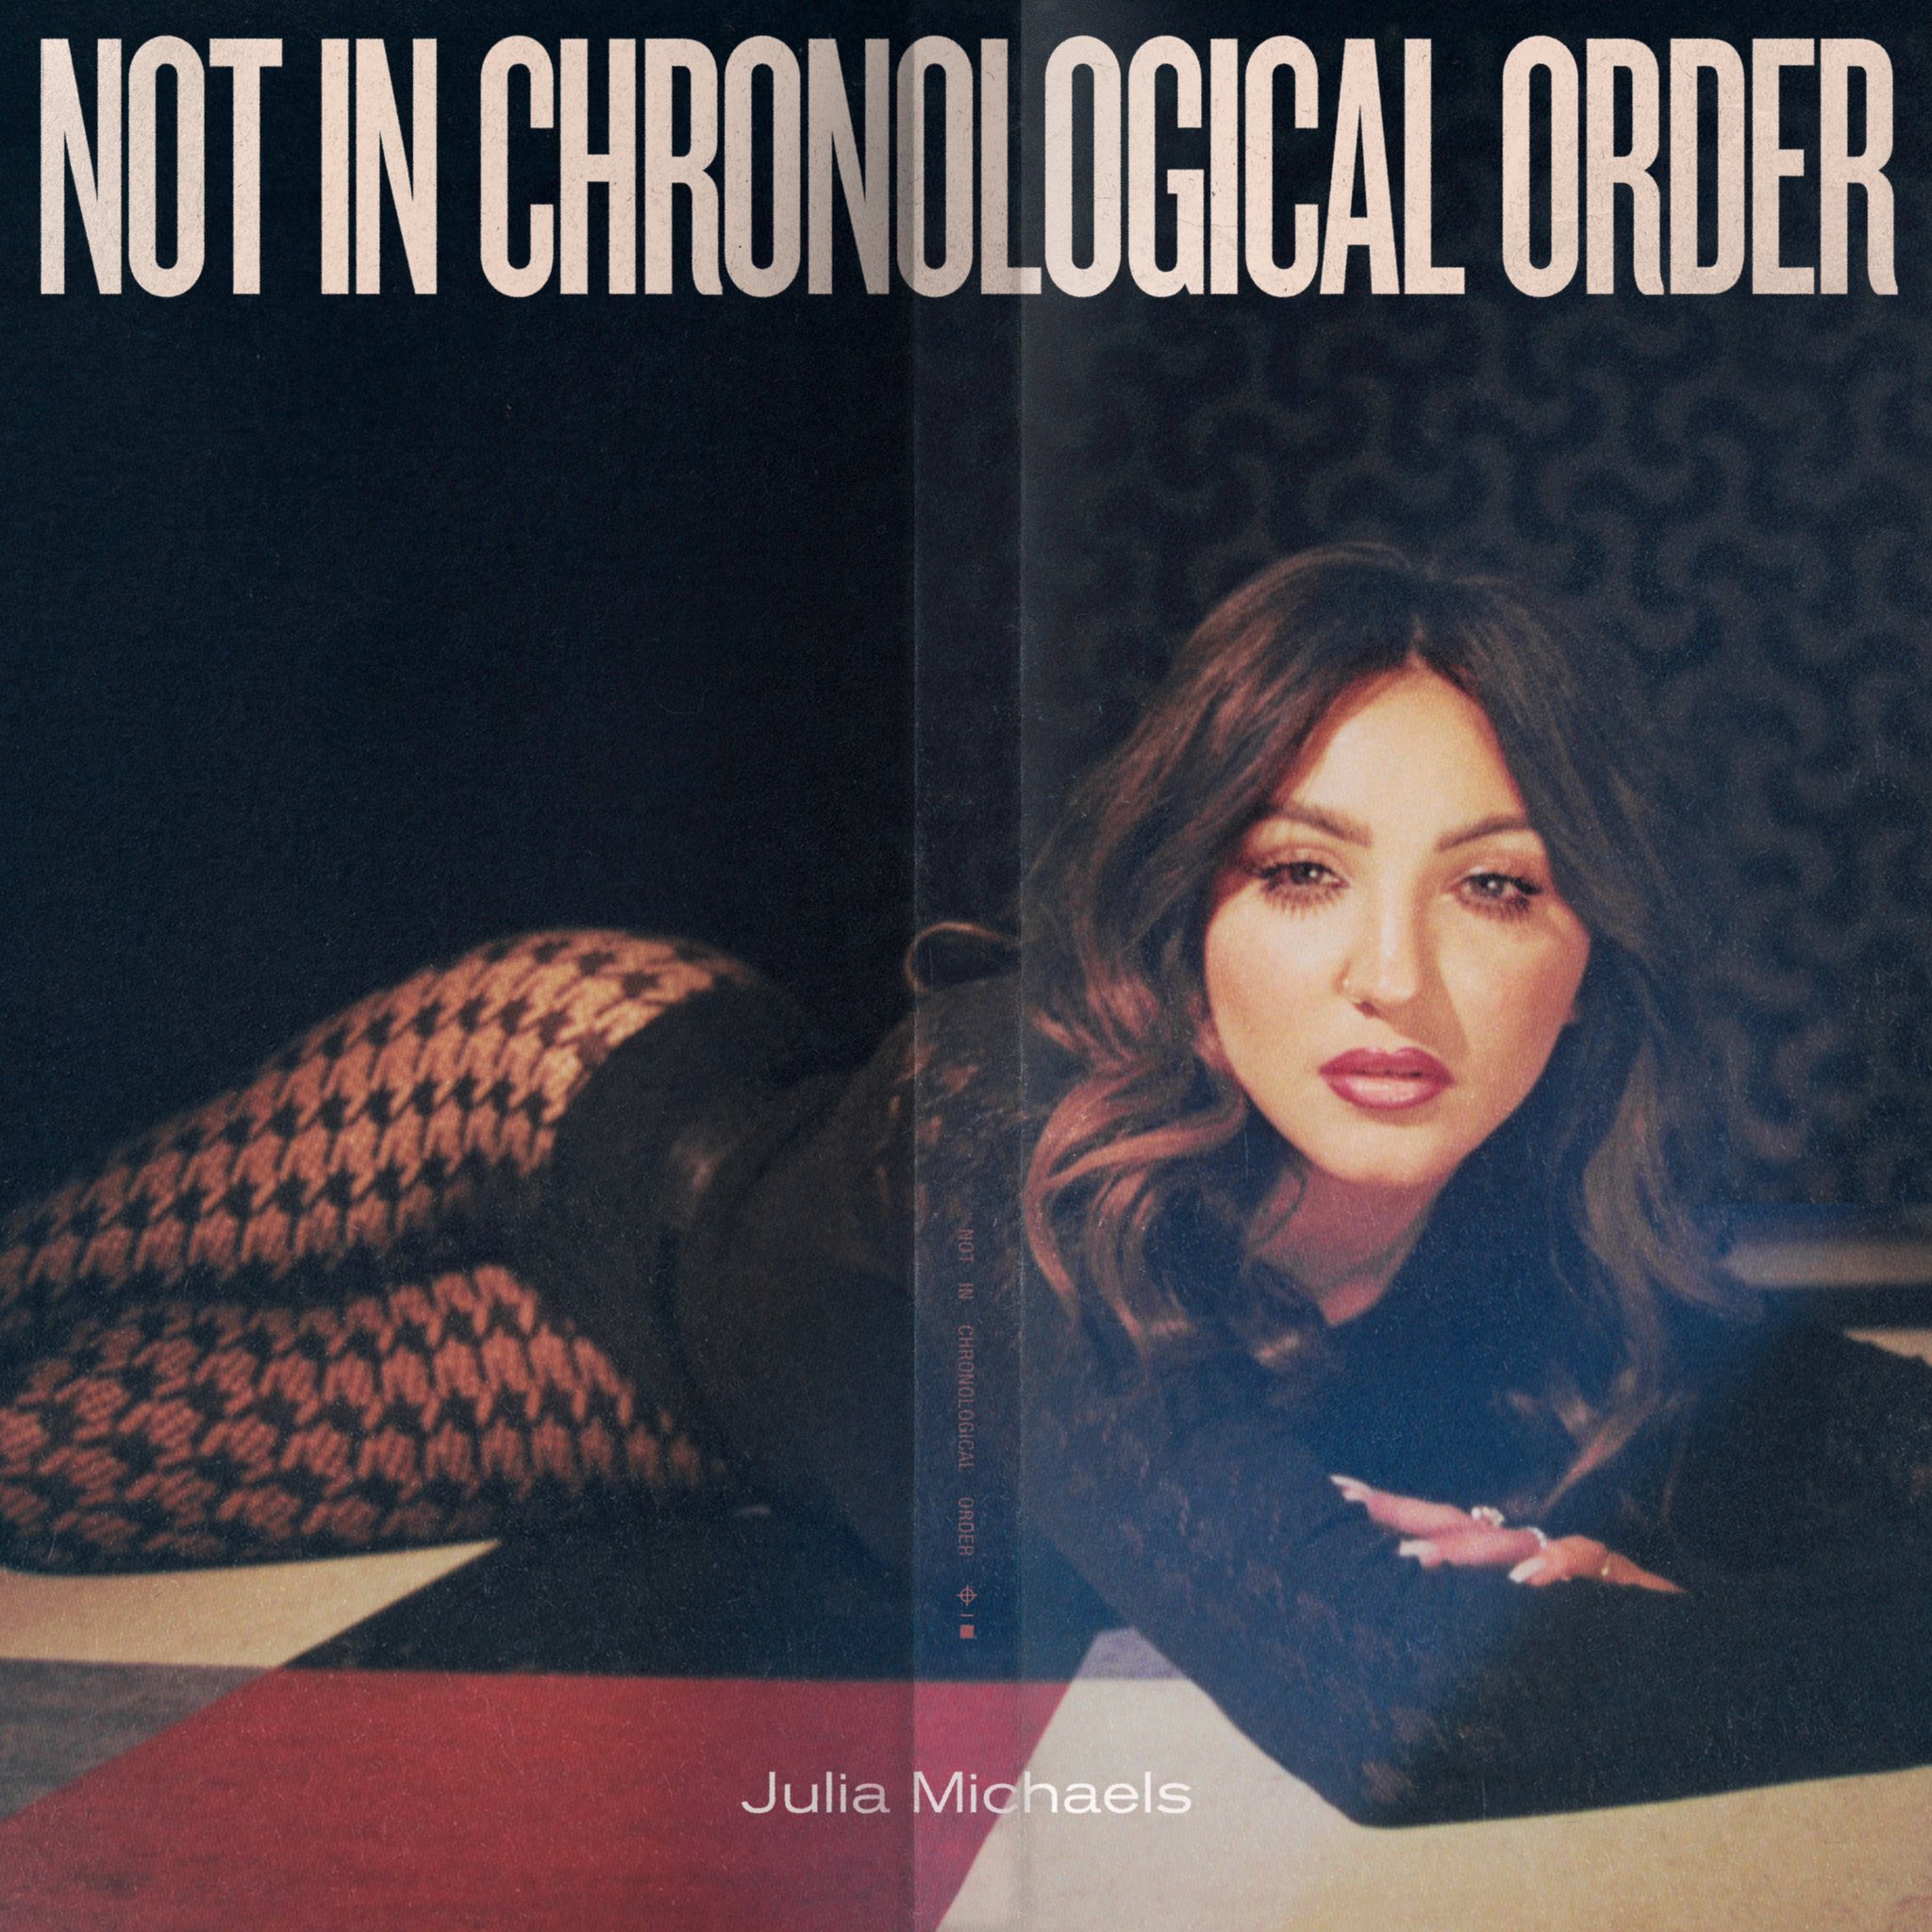 julia michaels artwork album not in chronological order